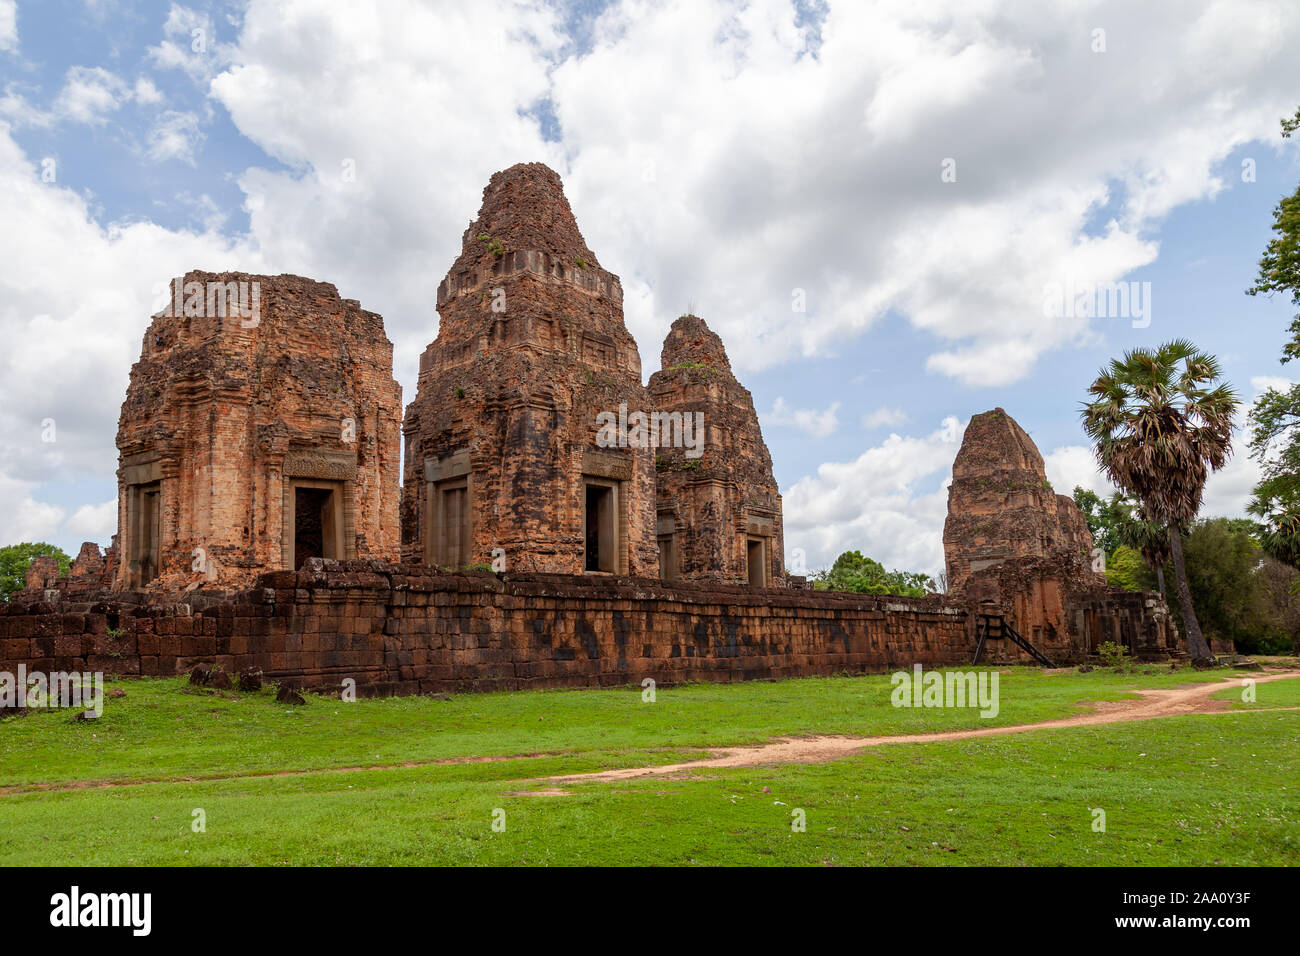 East Baray temple en saison des pluies. C'est l'un des plus grands temples avec de belles statues d'éléphants à Siem Reap, Cambodge. Saison des pluies rend pour nice co Banque D'Images